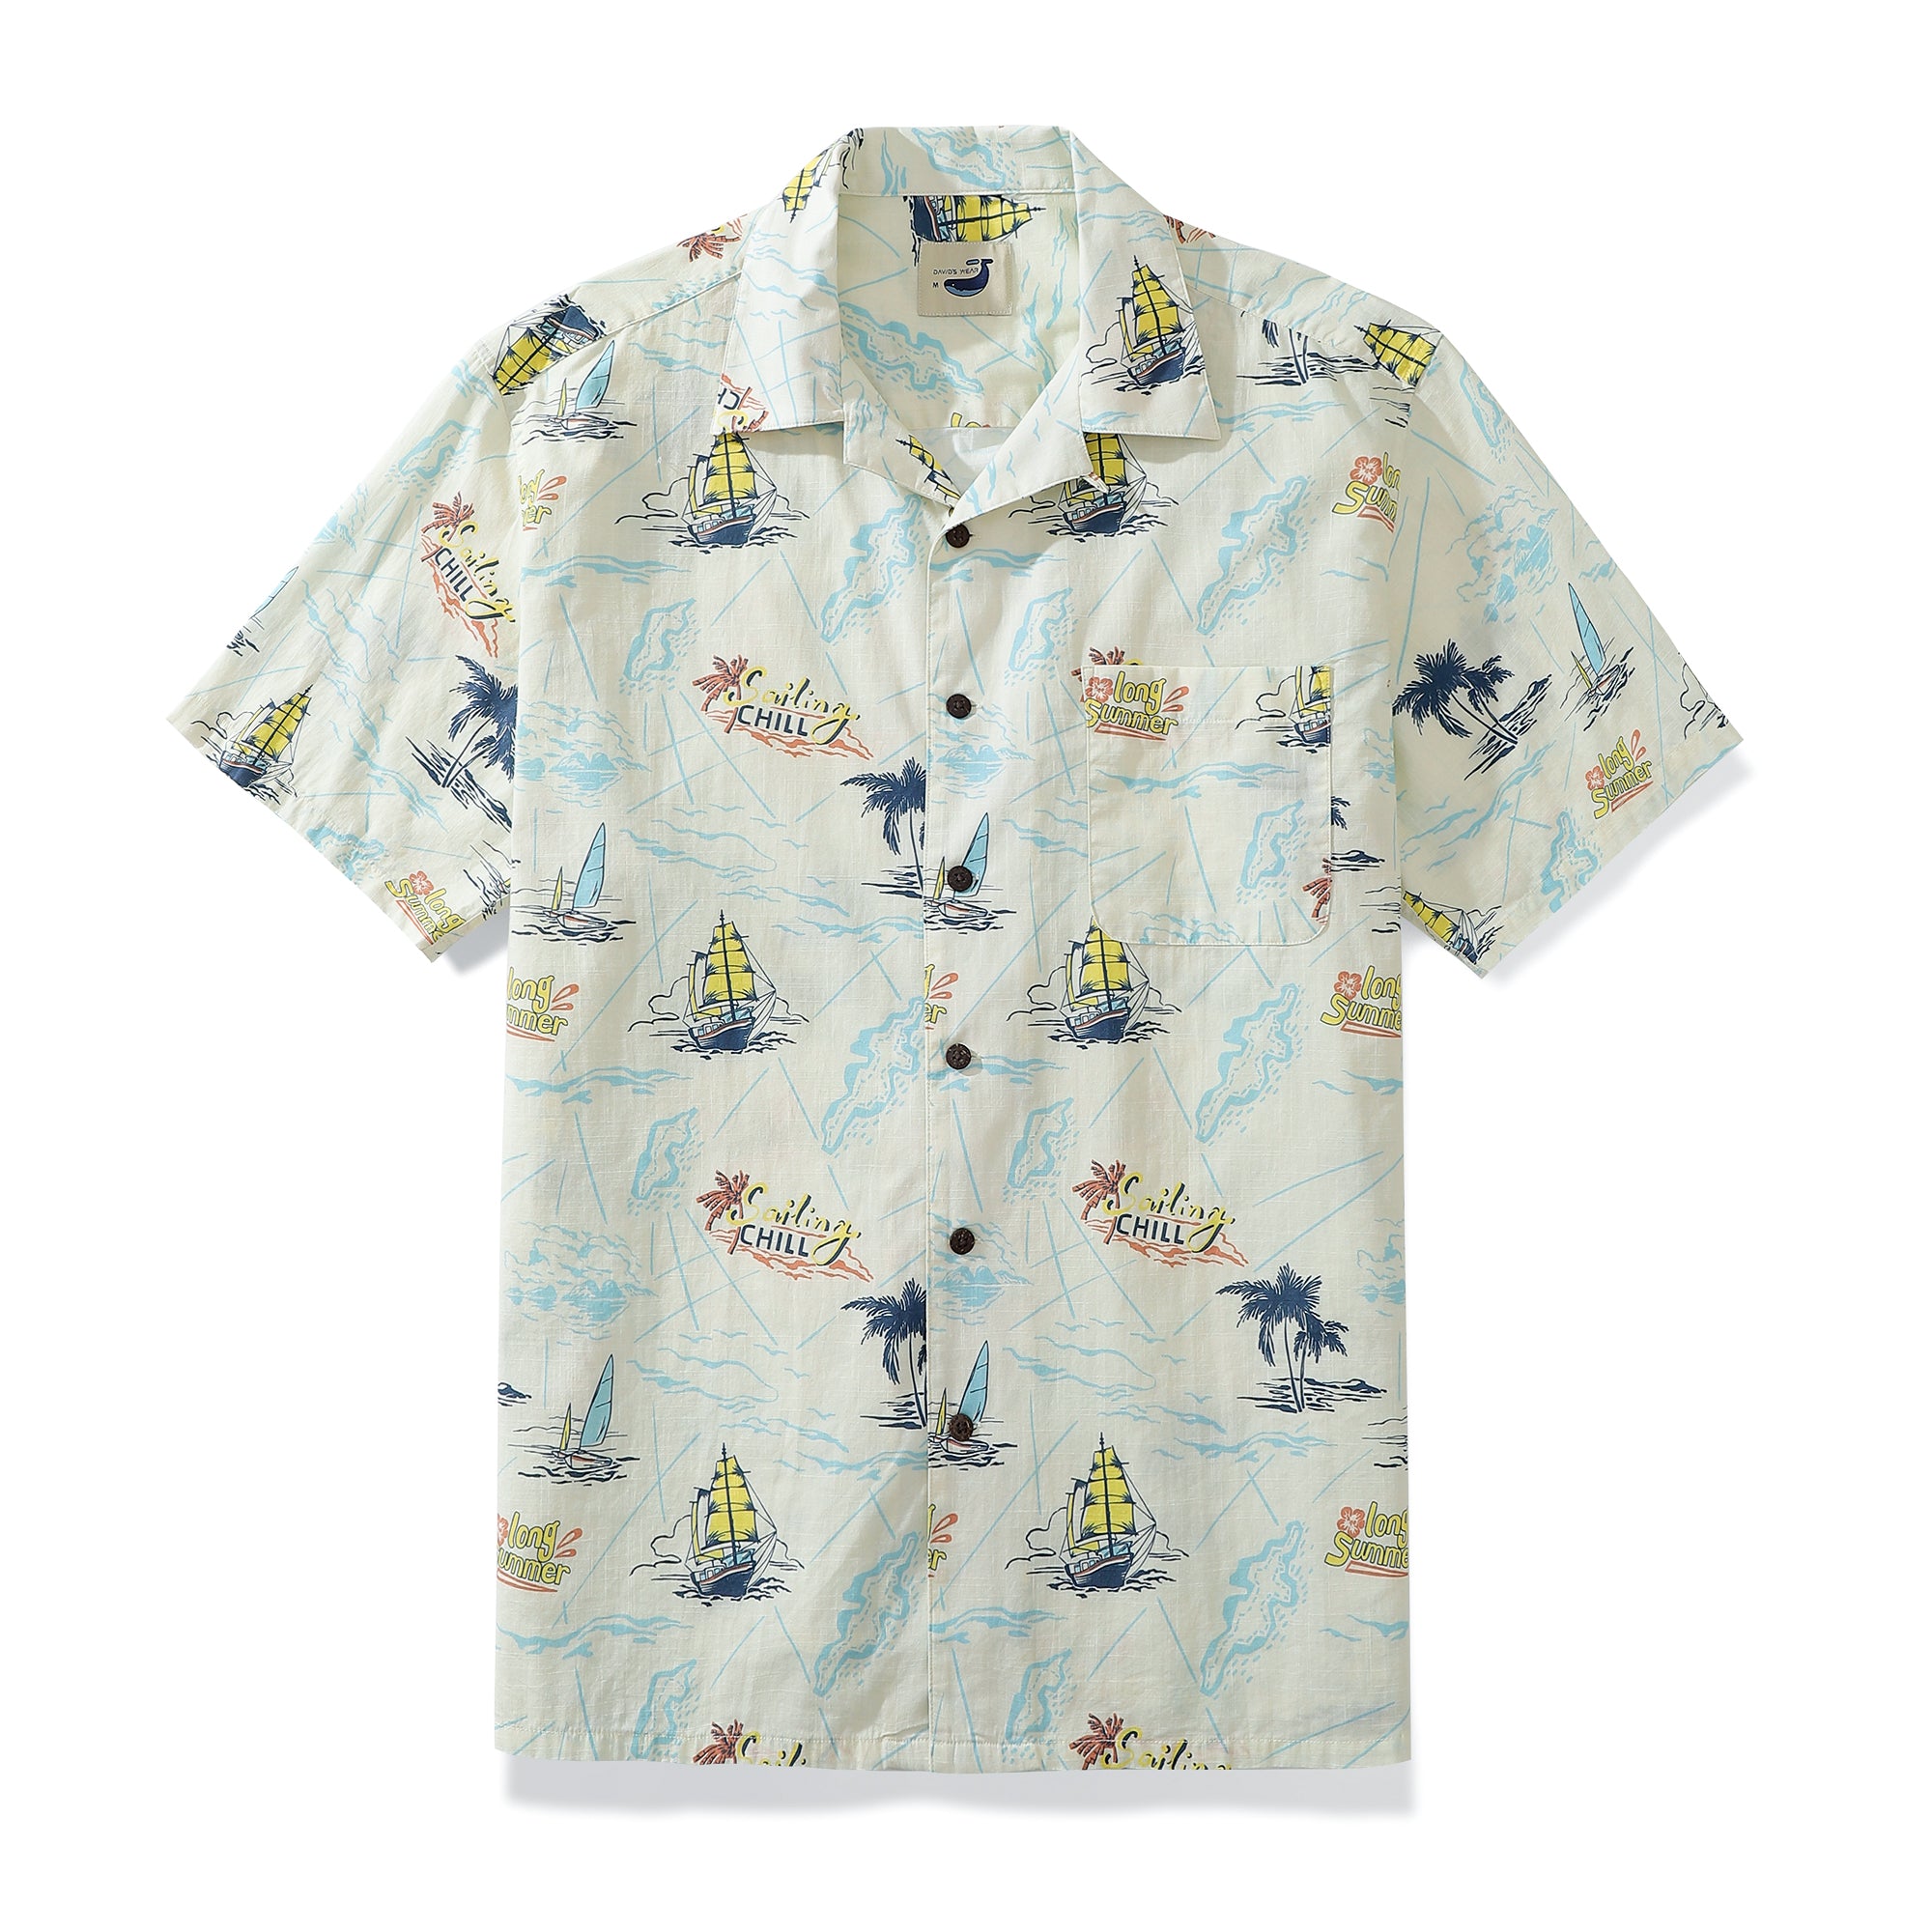 Sailing Adventure Men's 100% Cotton Camp Shirts Coconut Button